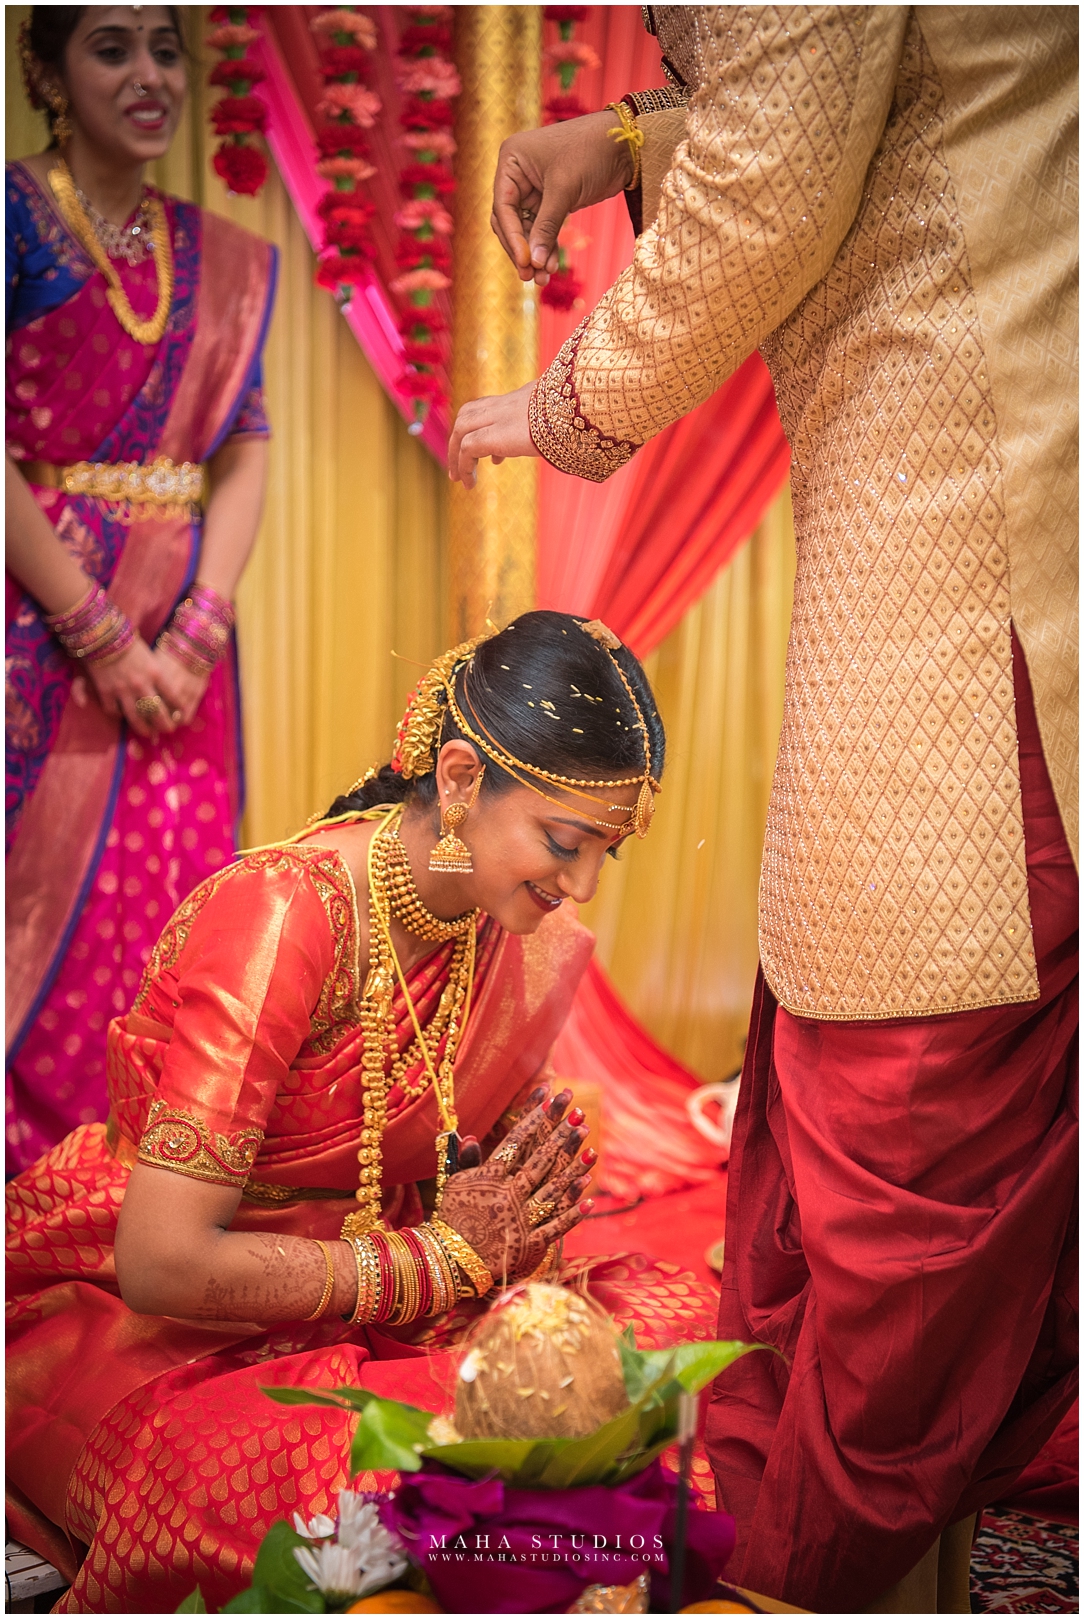 South Indian Bride namaste at wedding